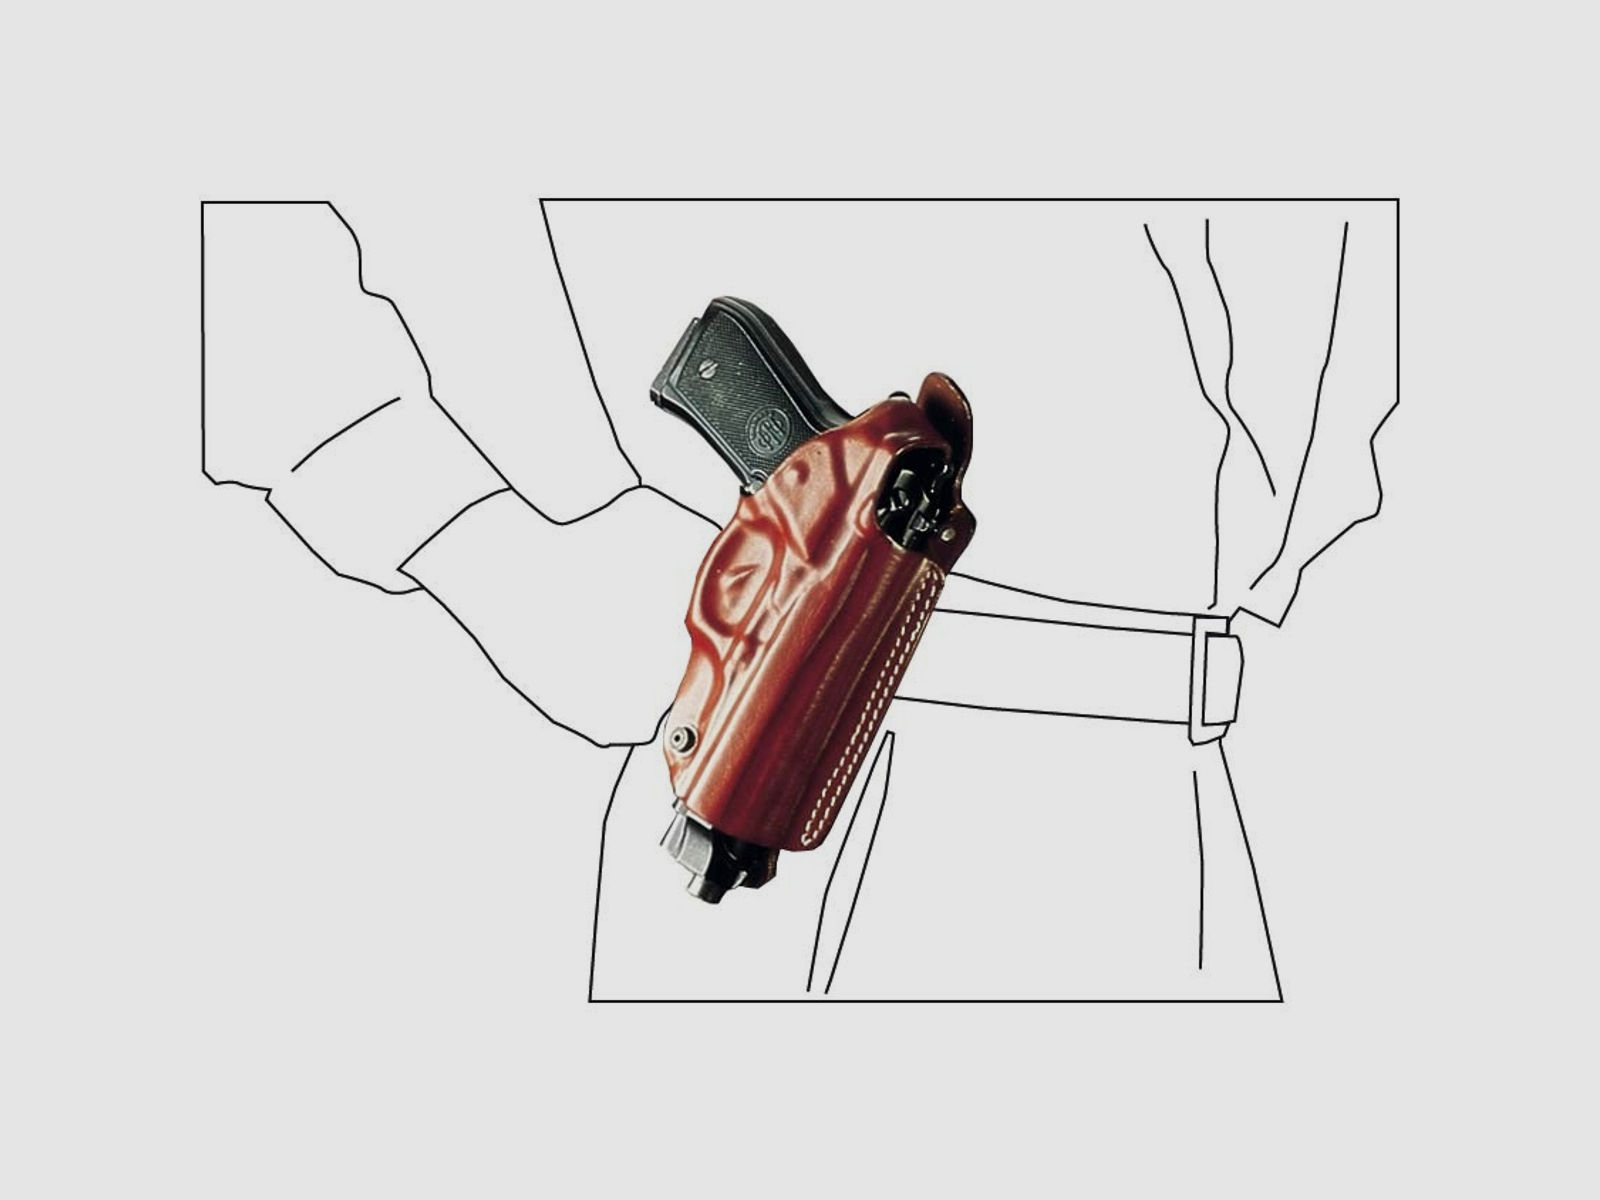 Mehrzweck-Schulterholster/Gürtelholster "Miami" Glock 26/27, Walther PPS-Braun-Rechtshänder